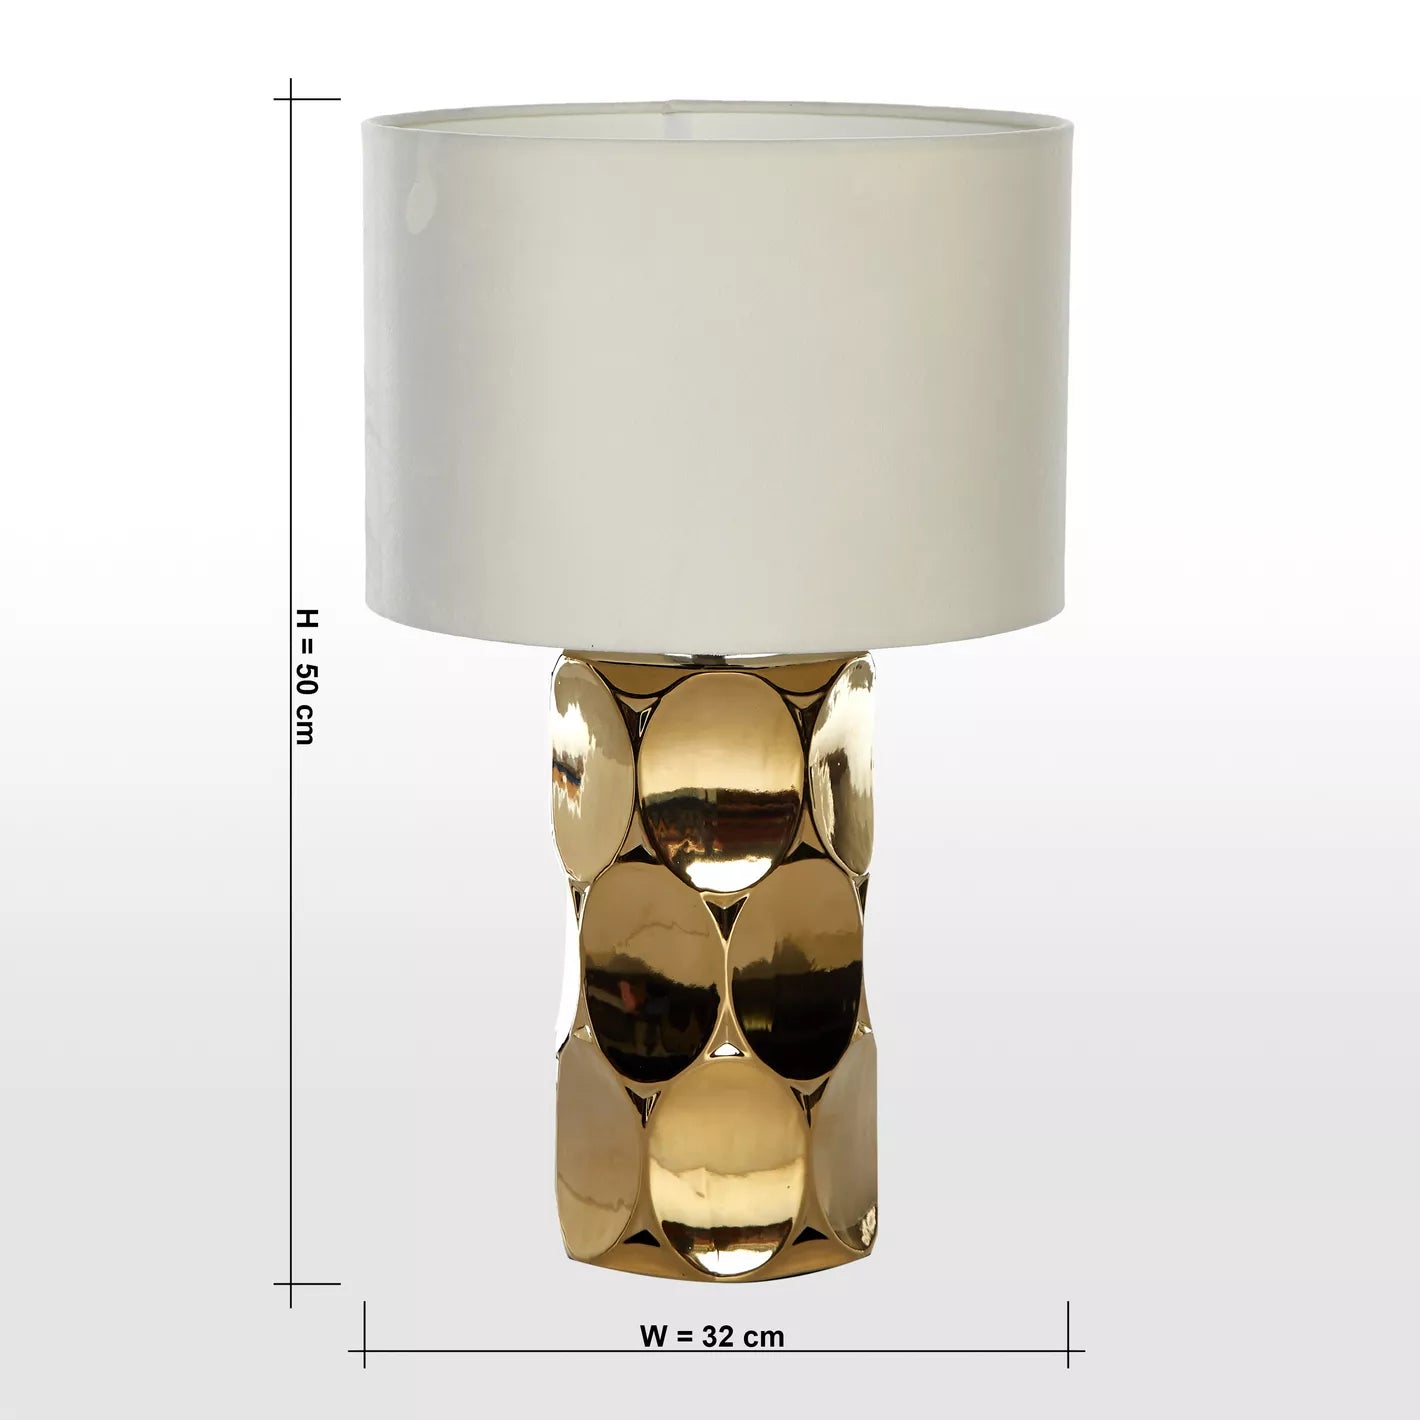 Recha Ceramic Table Lamp - 52 cm